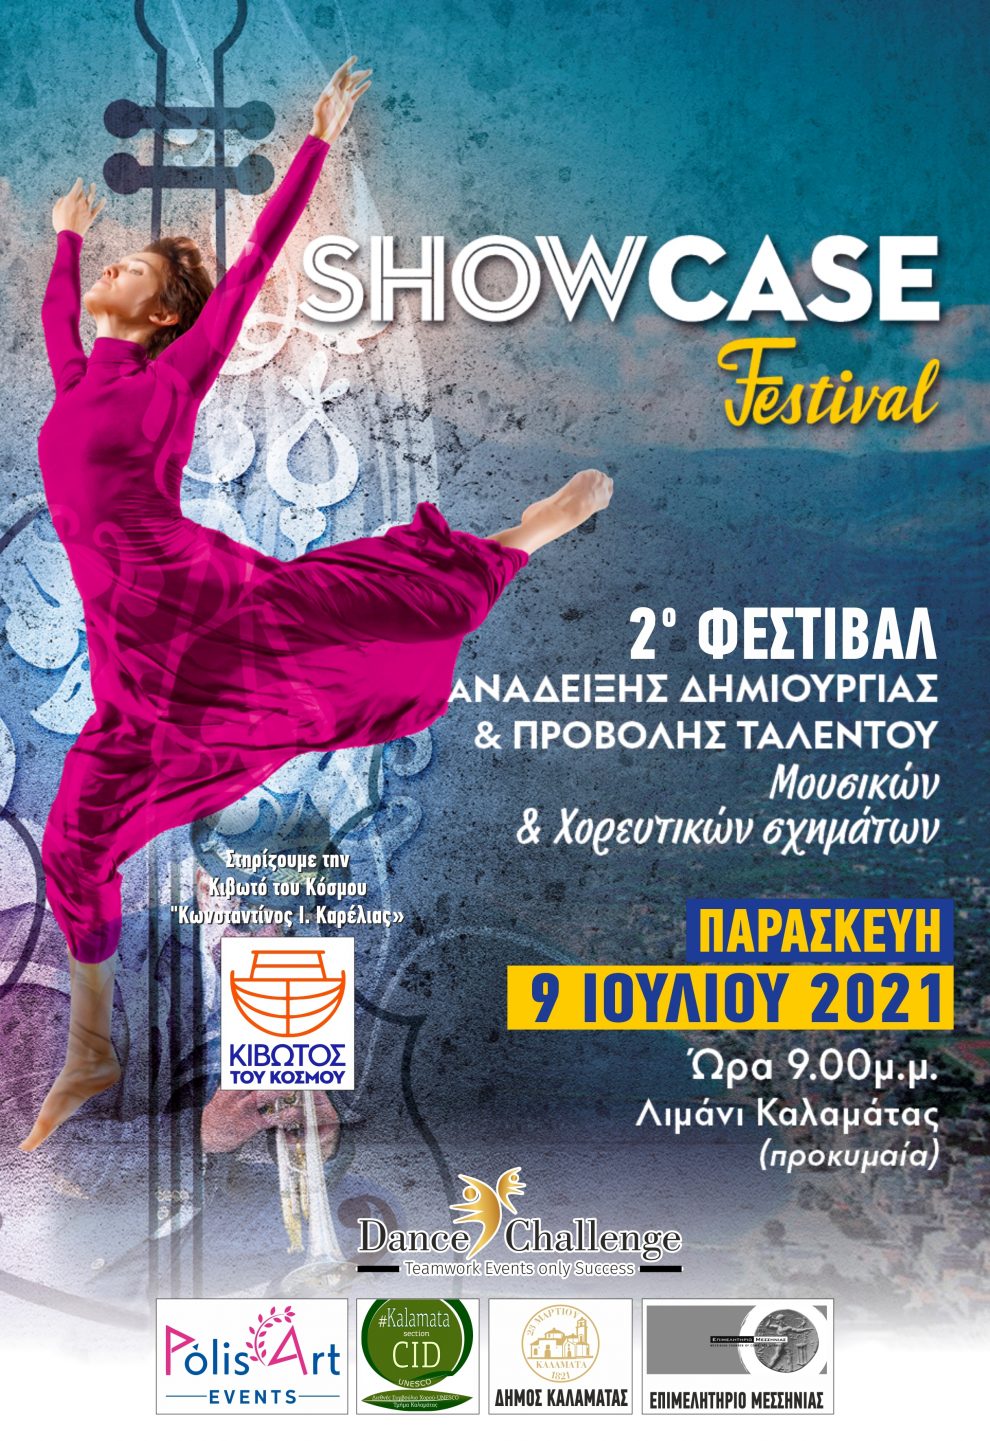 Το «Showcase Festival -Ανάδειξης Δημιουργίας» επιστρέφει δυναμικά στην Καλαμάτα